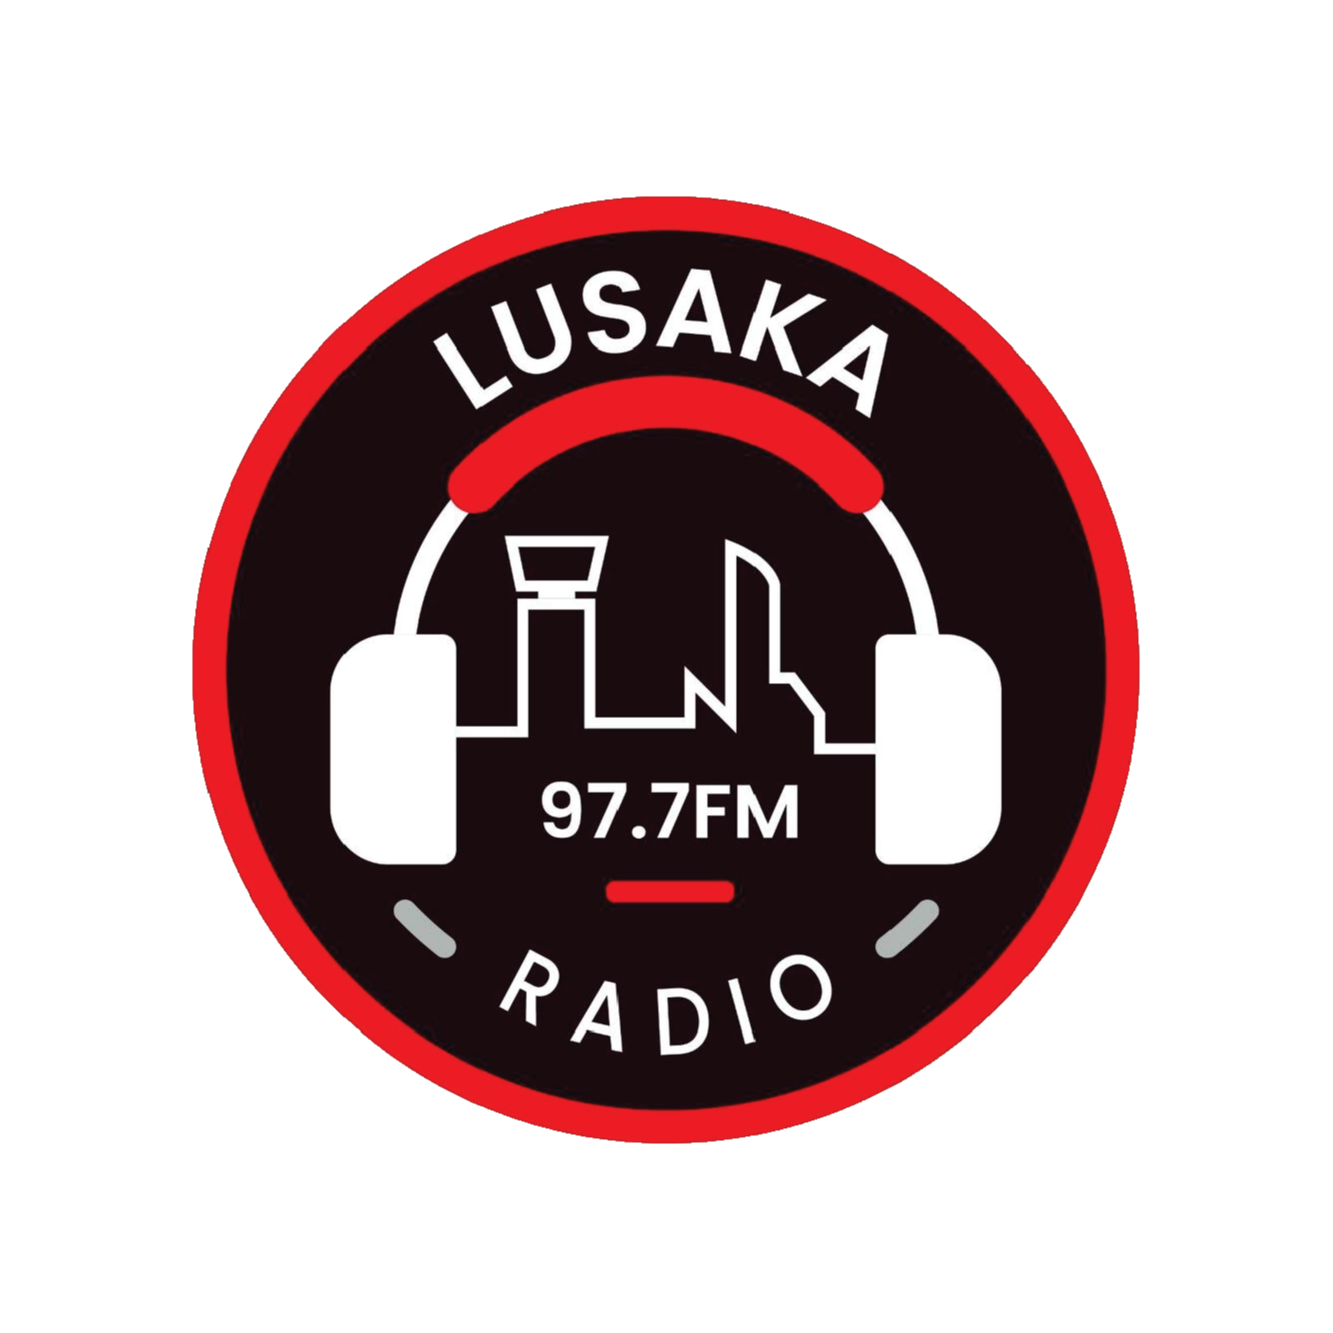 Lusaka Radio 977